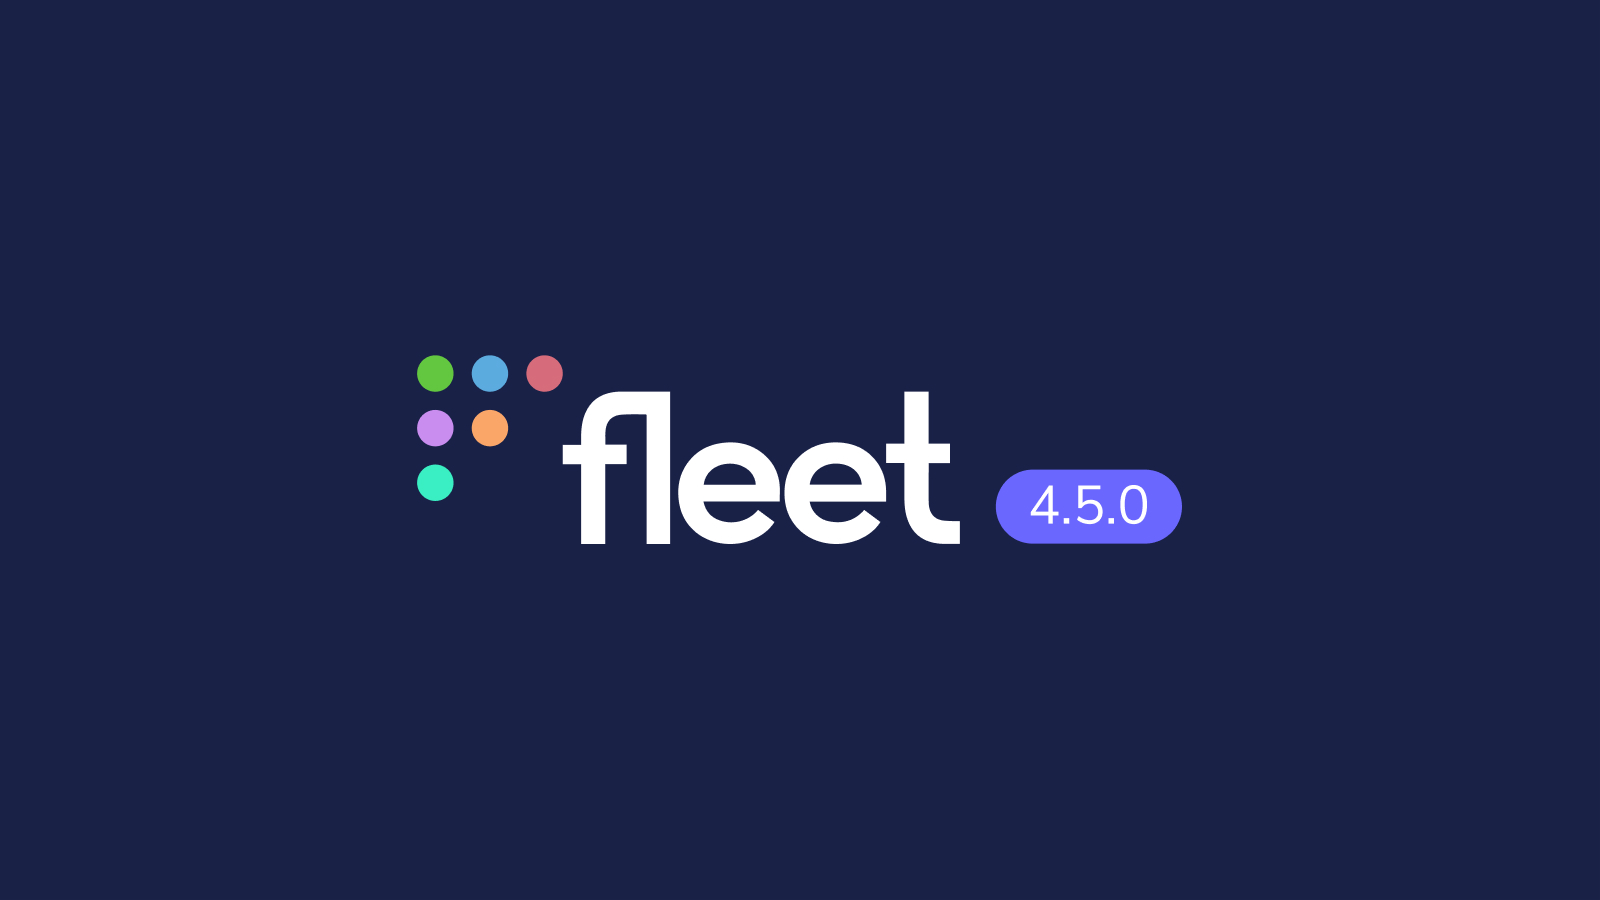 Fleet 4.5.0